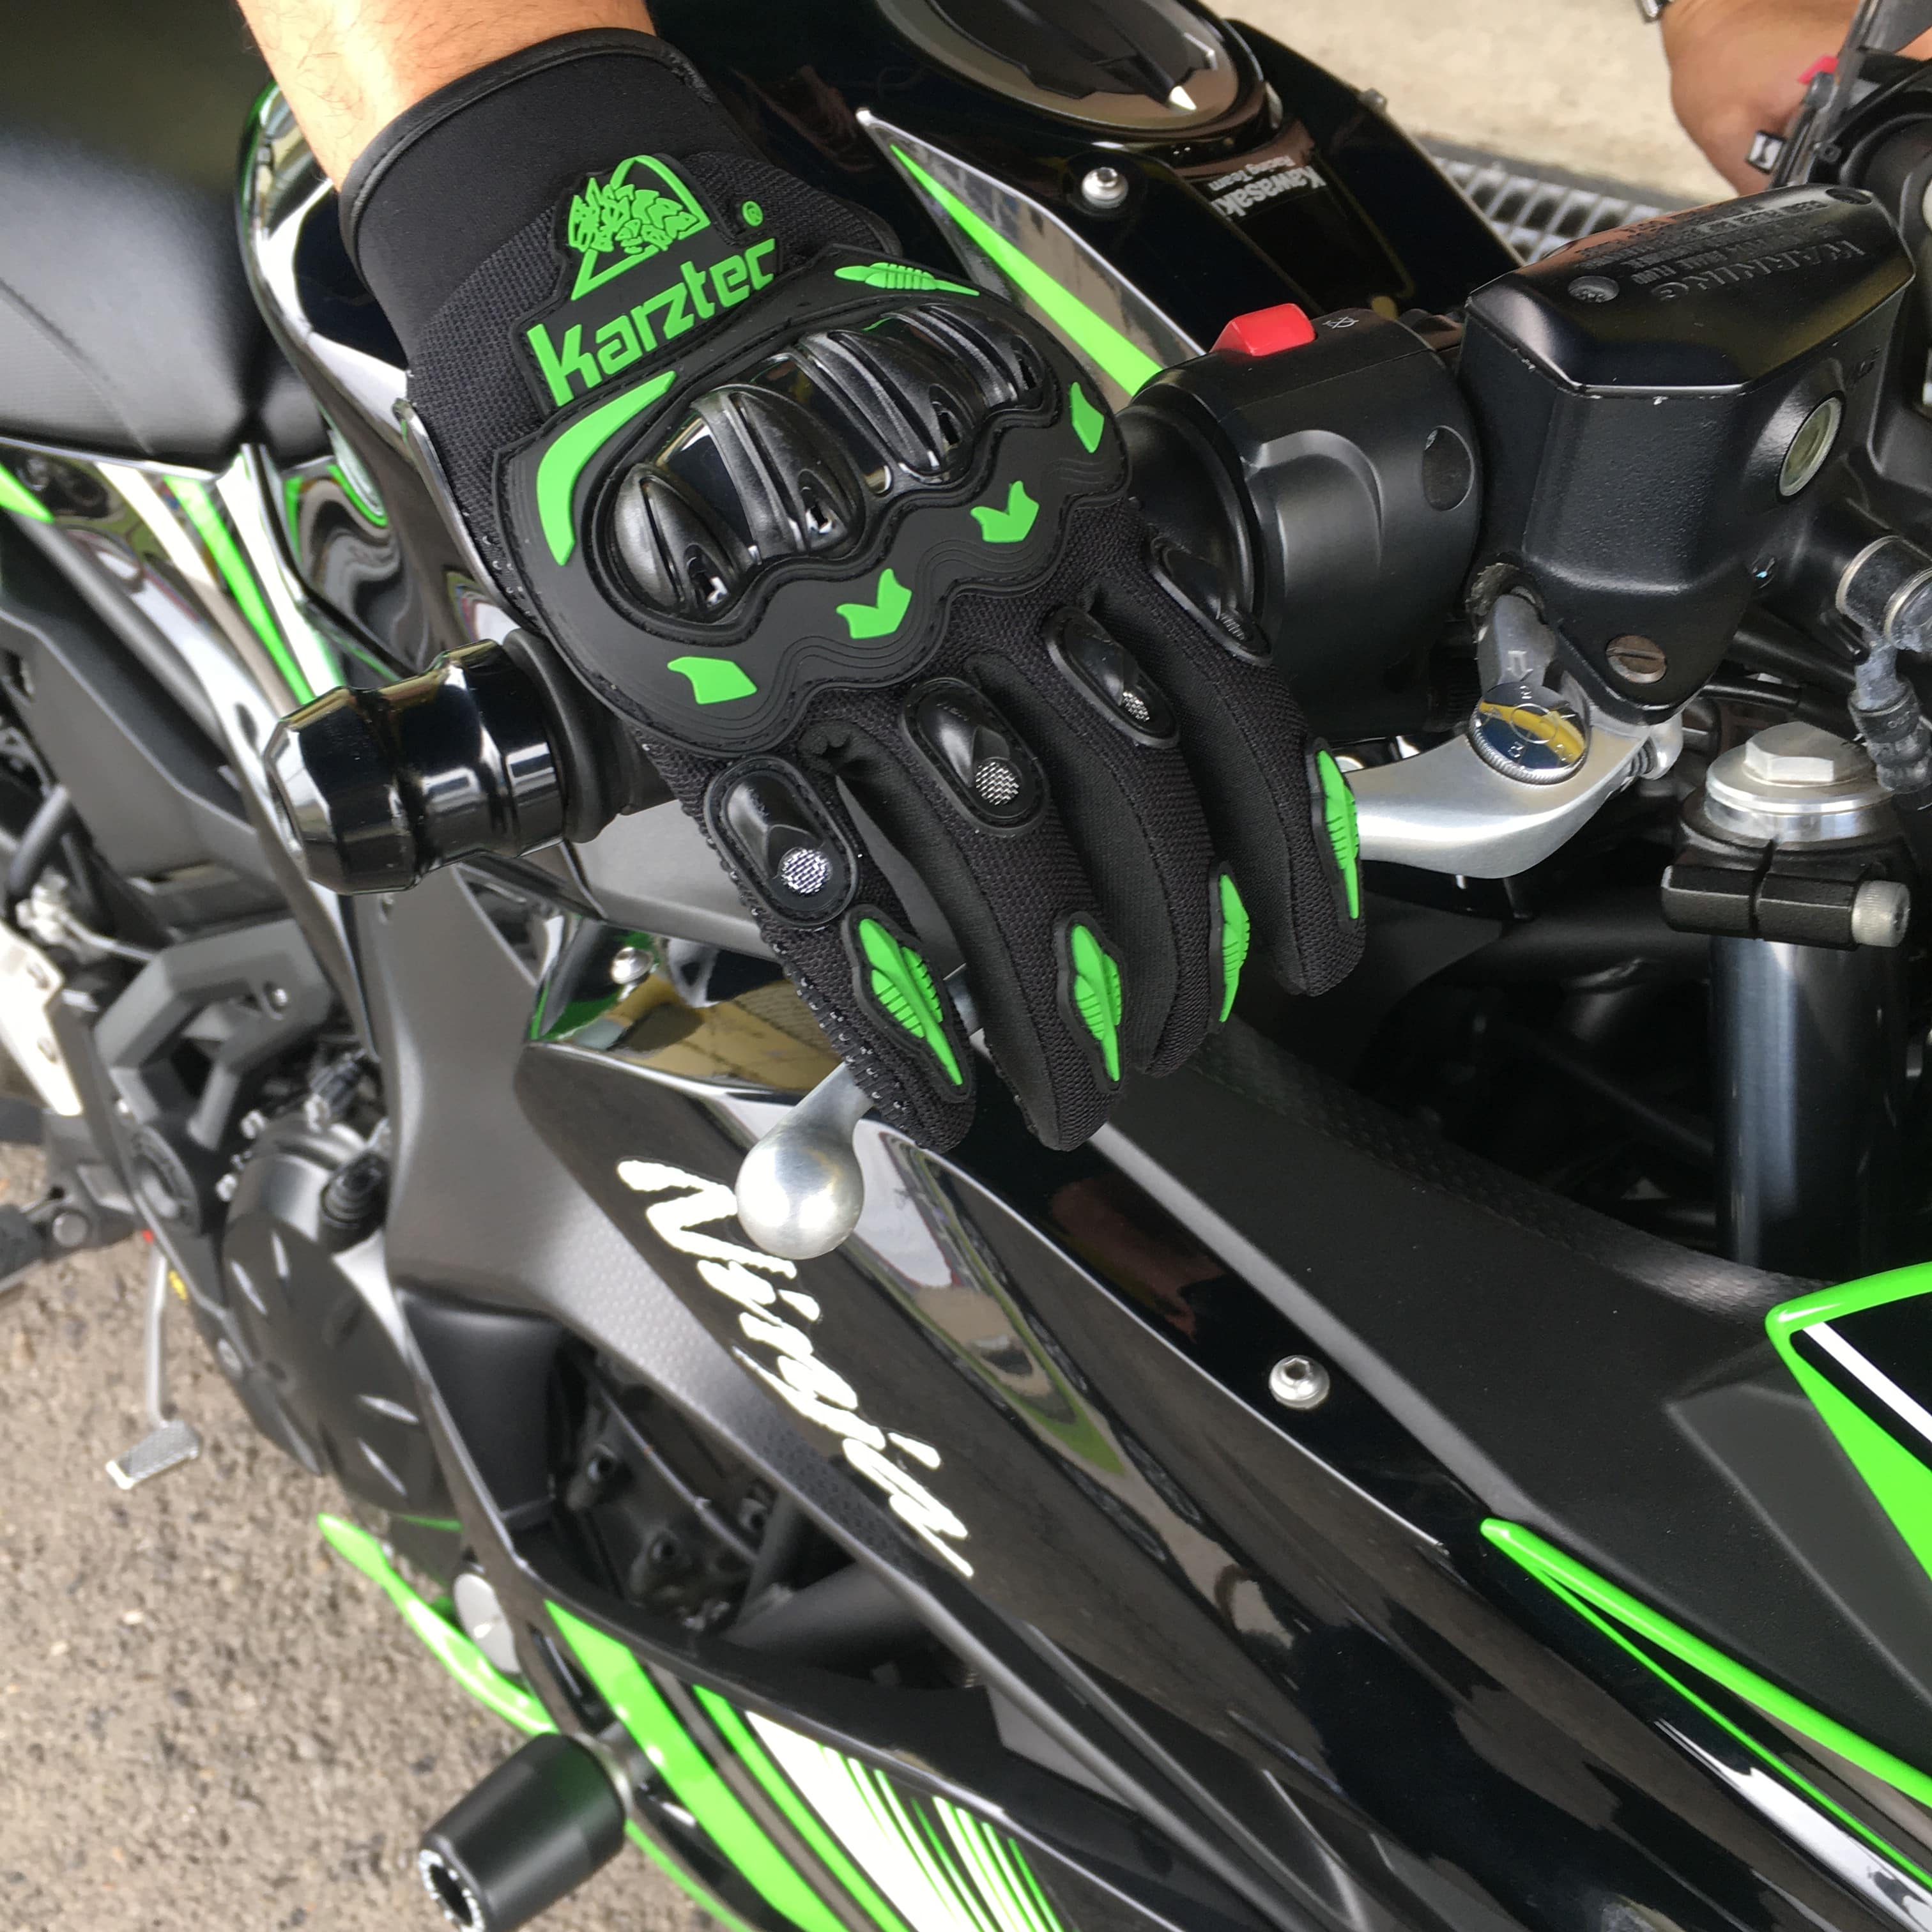  мотоцикл перчатка летний осень для весна для смартфон сетка перчатки мужской женский мотоцикл Rider's ma ho соответствует сенсорная панель для мотоцикла 